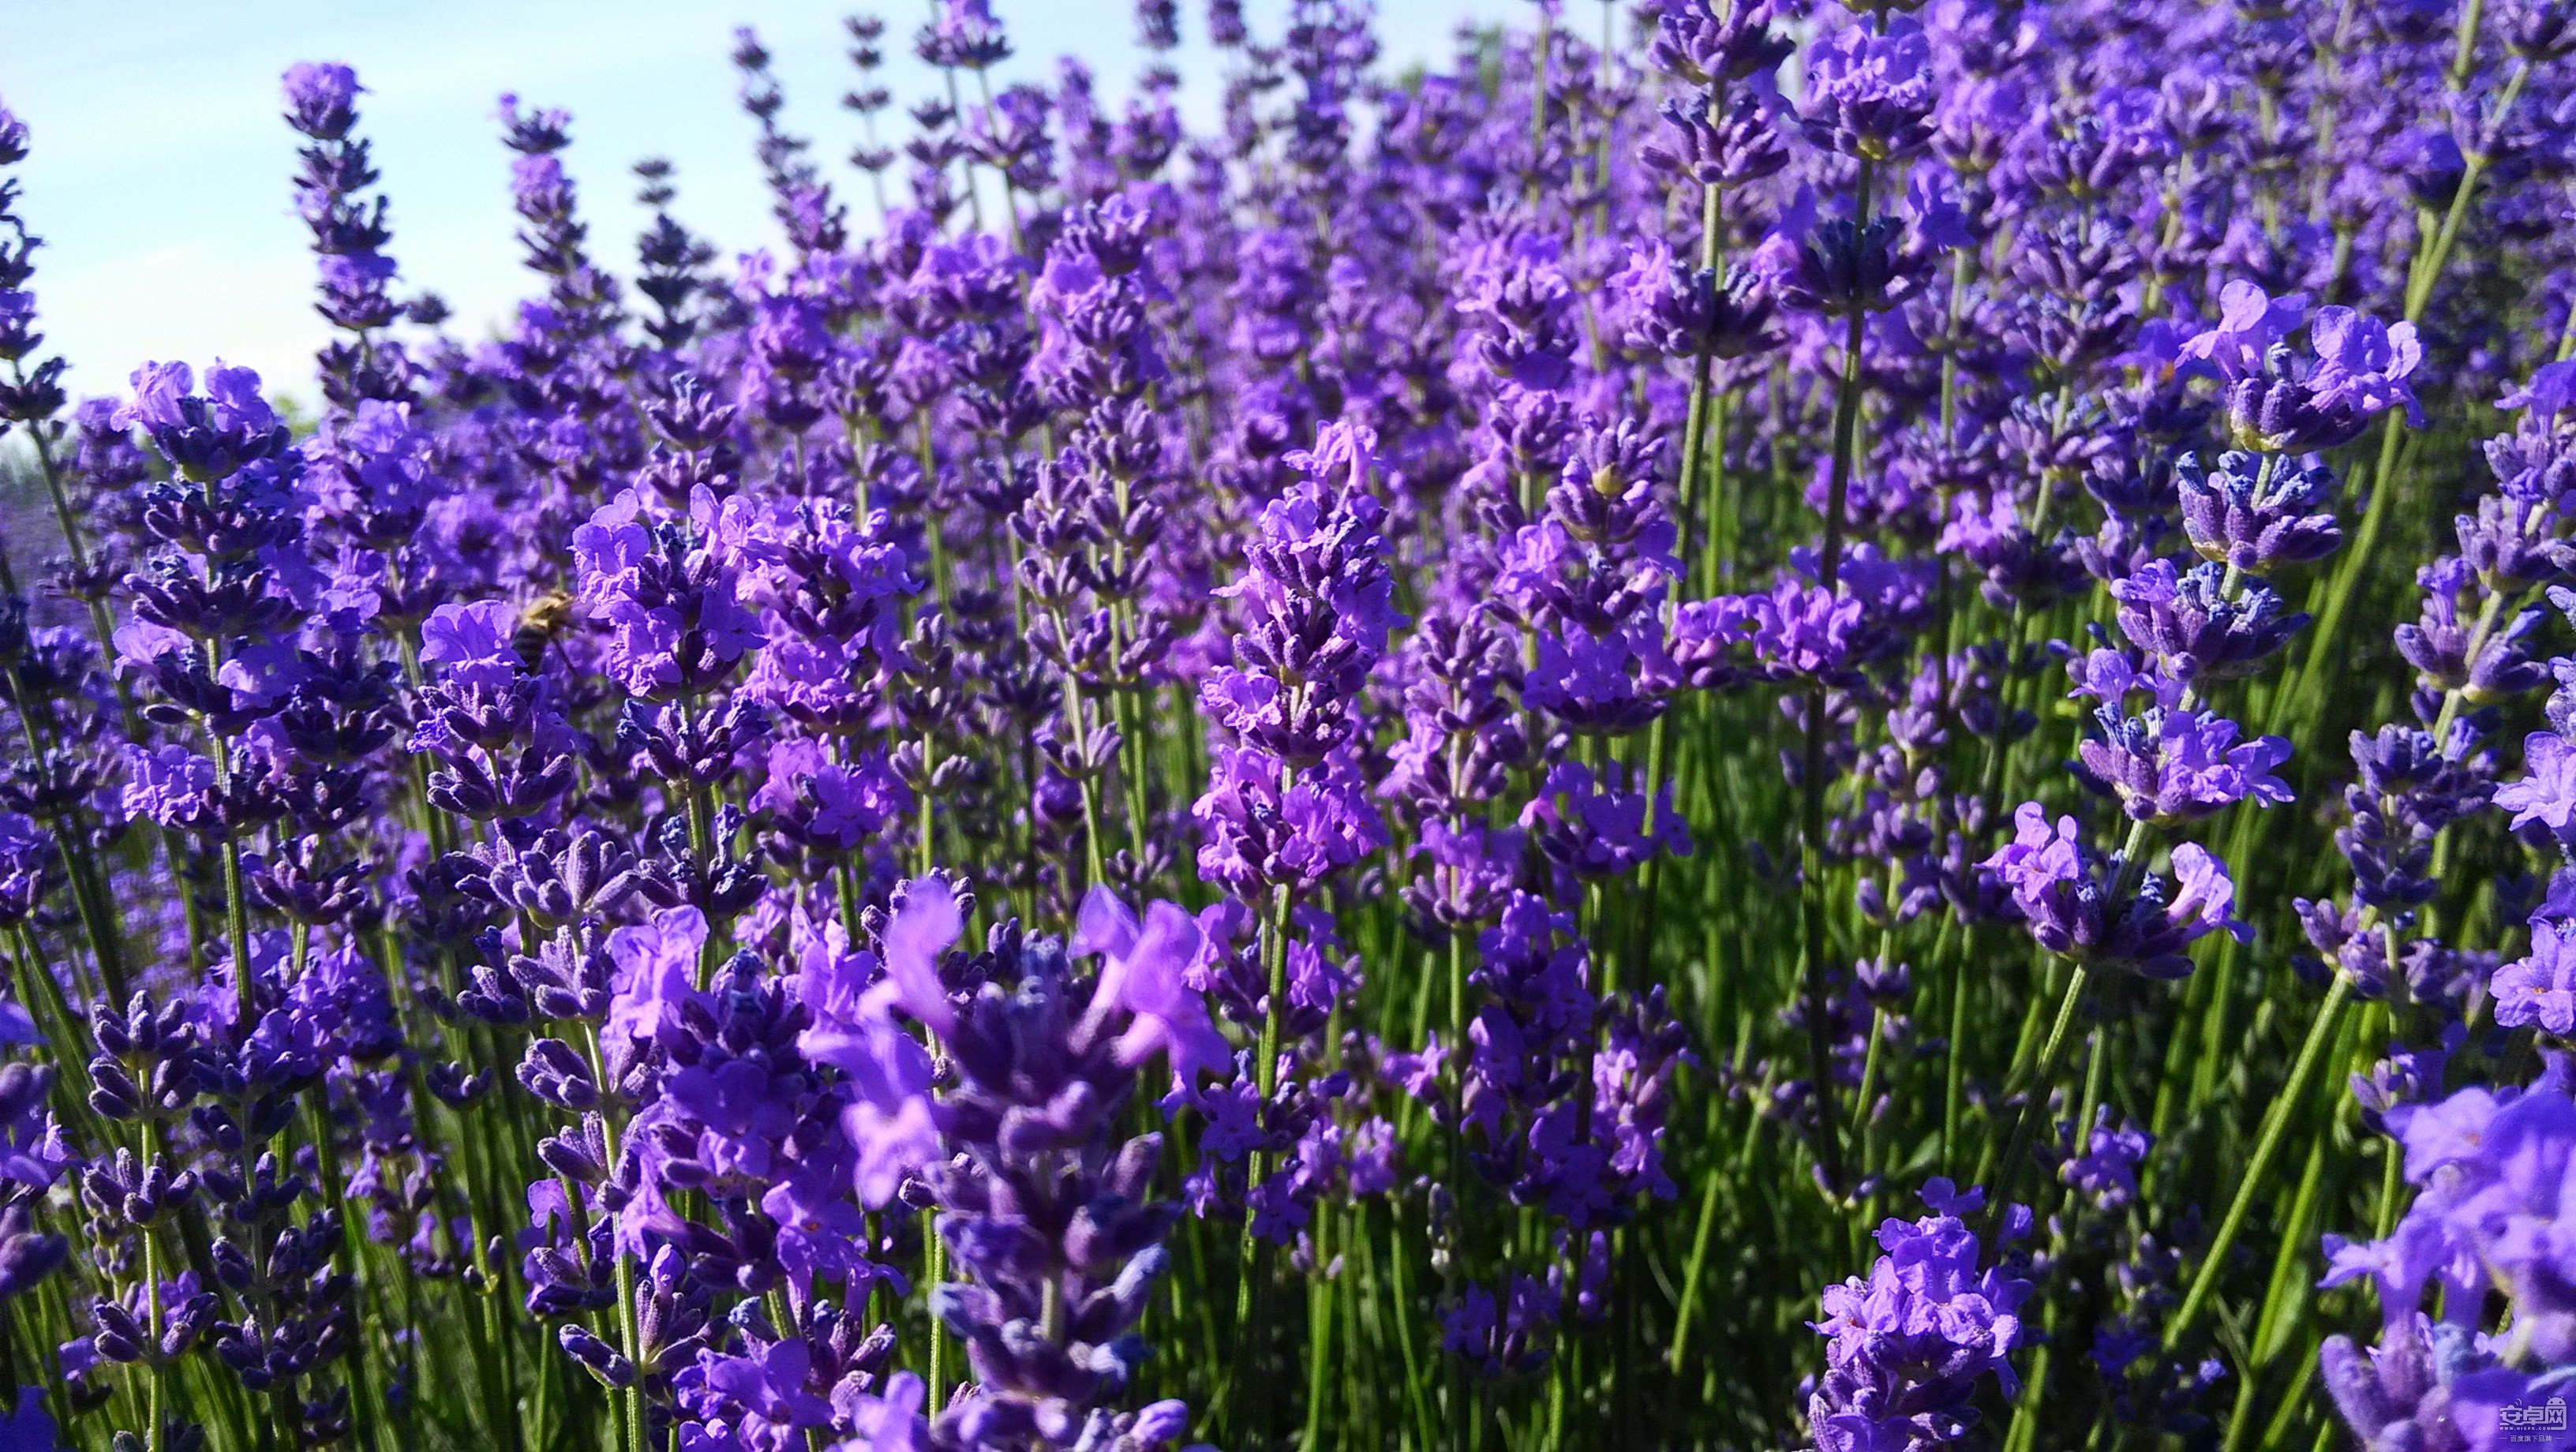 小米2s随心拍新疆伊犁的紫色薰衣草花海